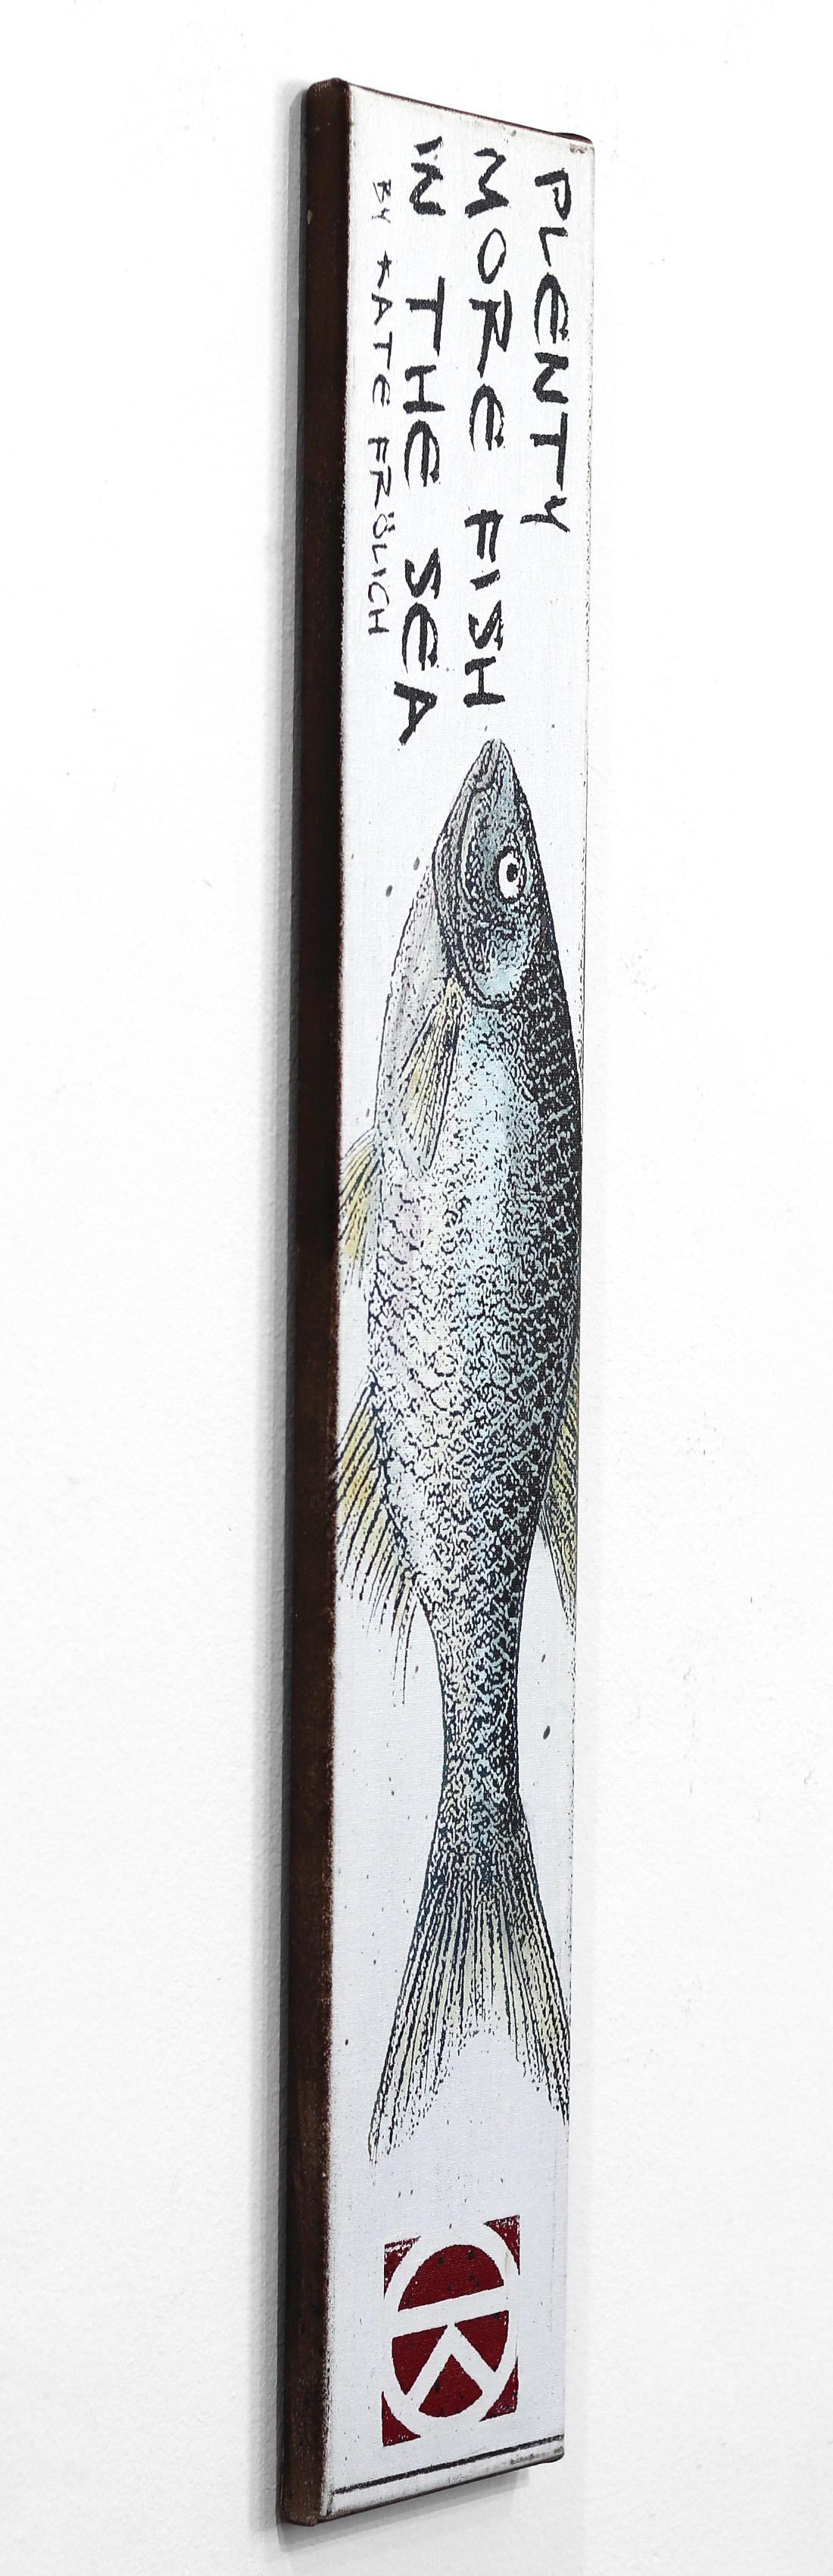 Plenty More Fish - Nature morte aquatique originale monochrome sur toile - Noir Still-Life Painting par Carl Smith